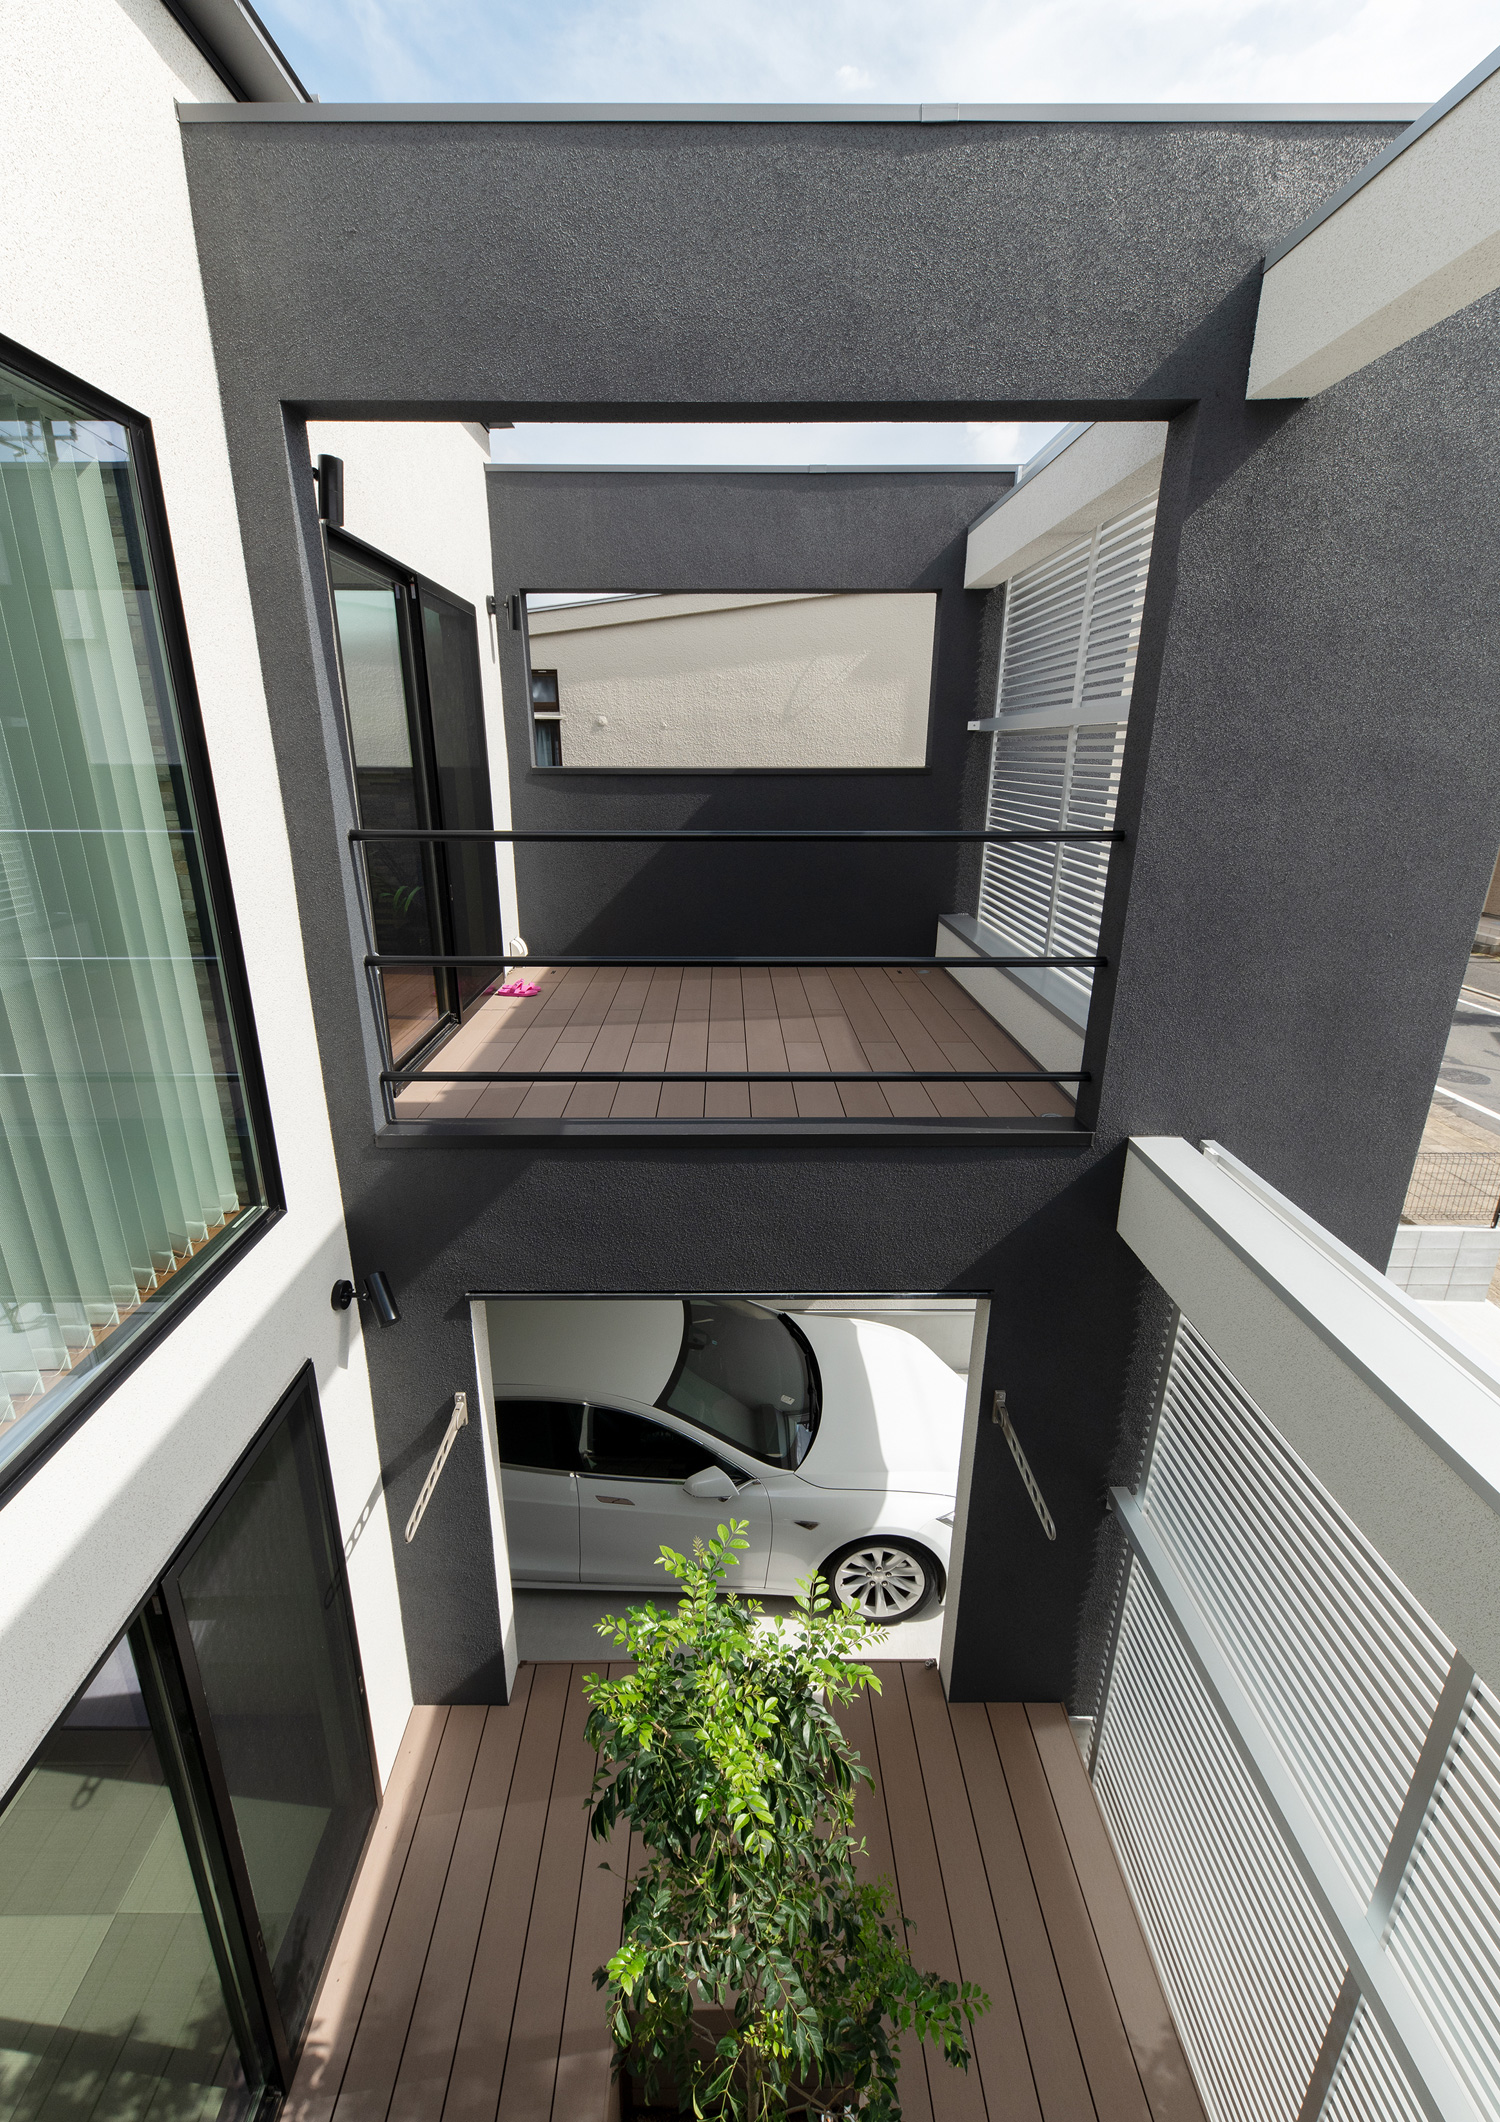 一階にインナーガレージと繋がる中庭があり、二階にバルコニーがある住宅・デザイン住宅